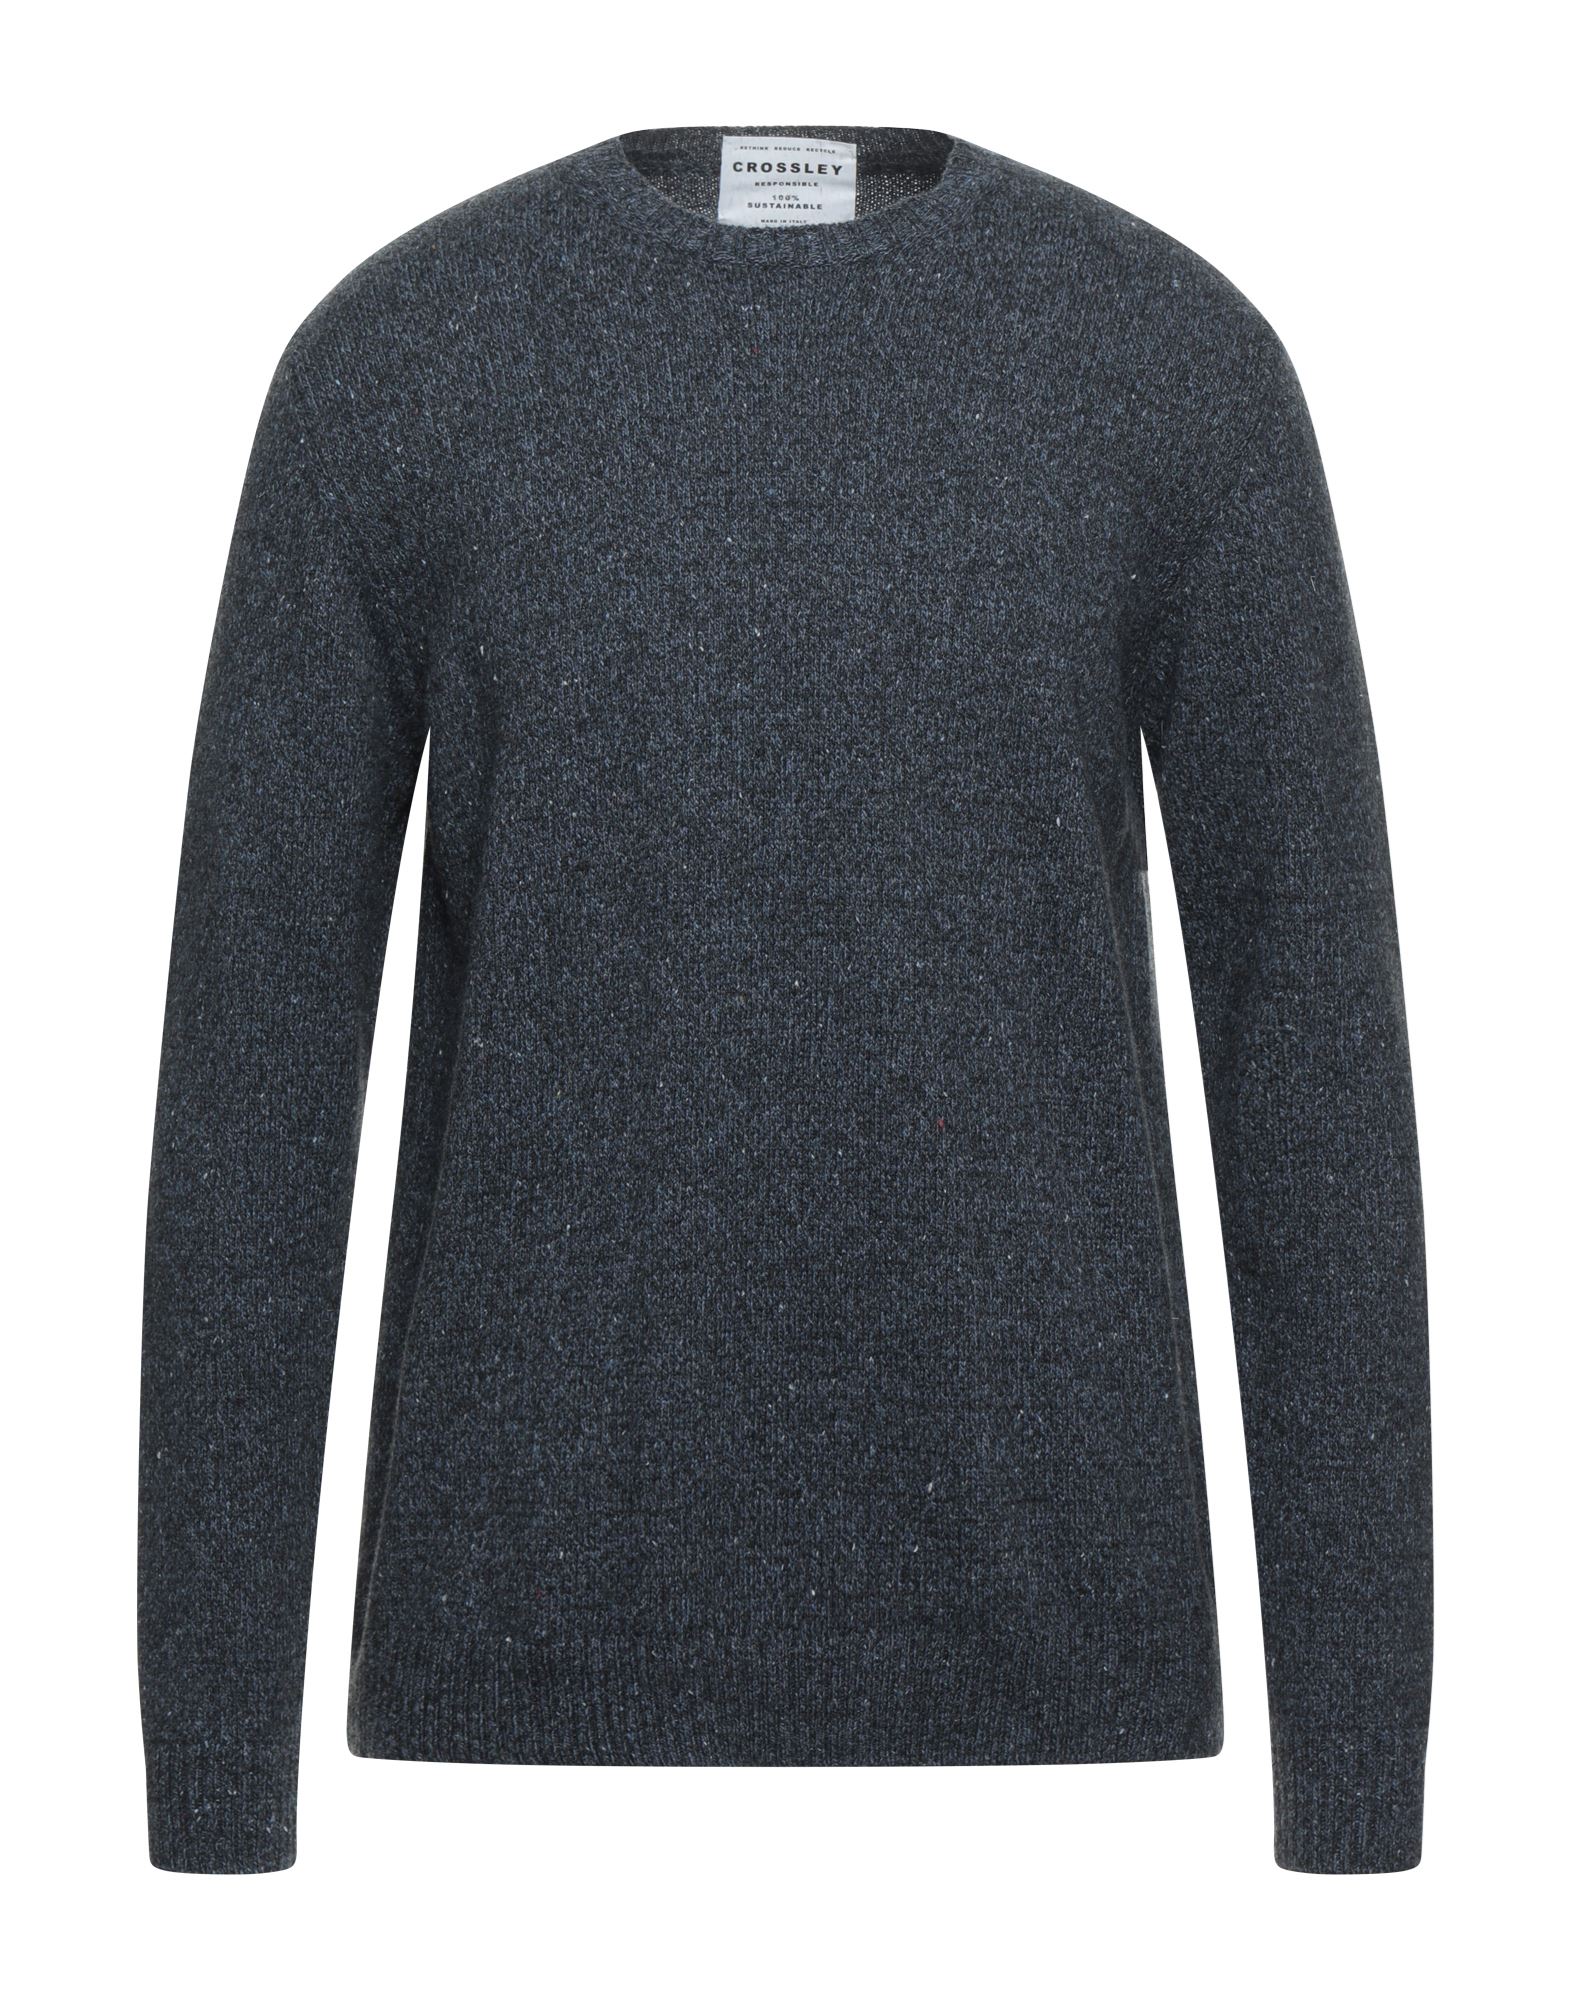 Crossley Sweaters In Slate Blue